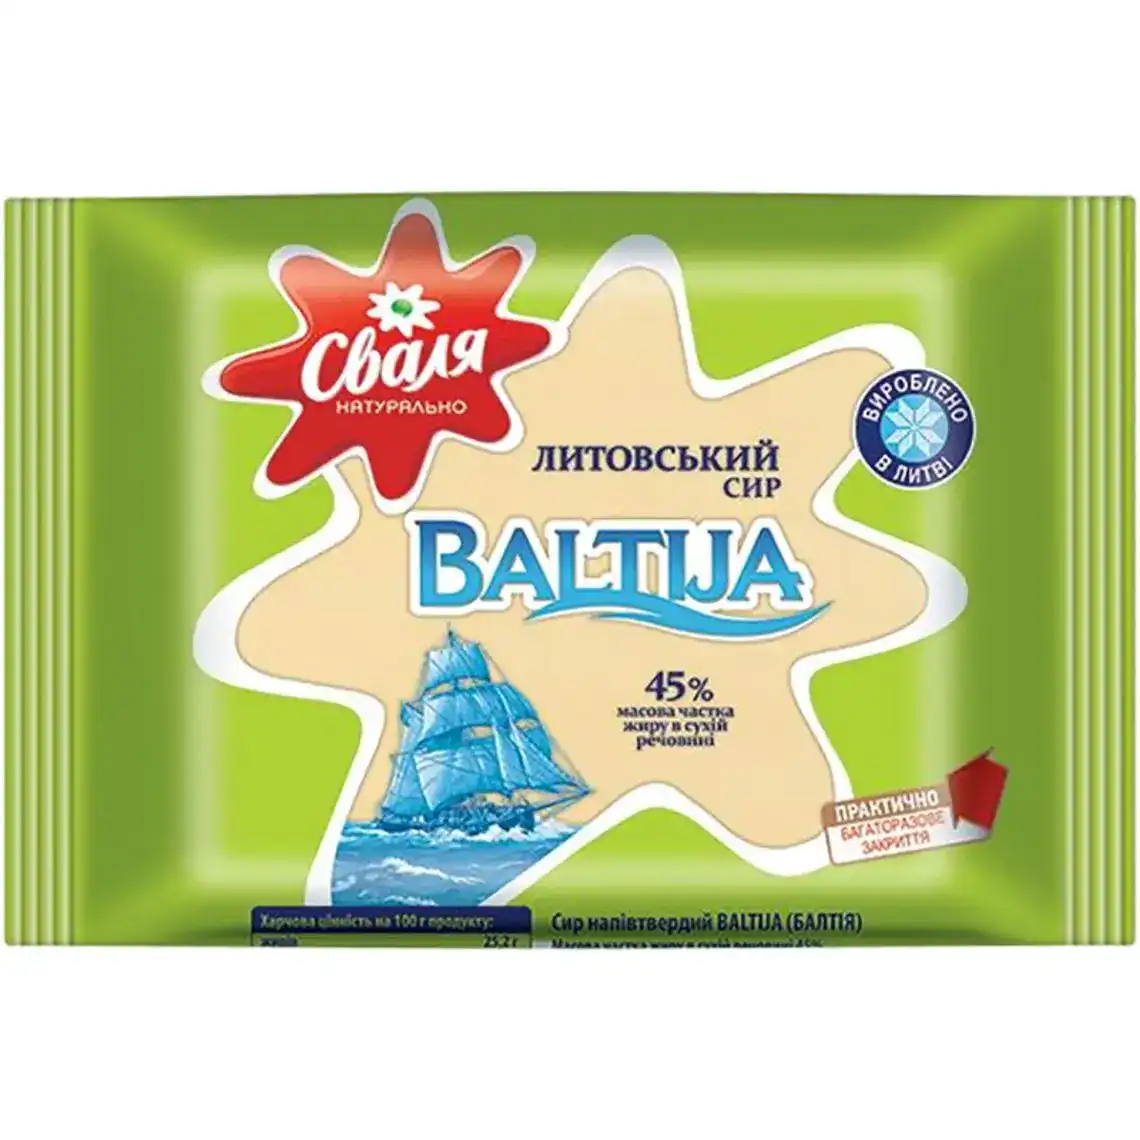 Сир Сваля Baltija литовський напівтвердий 45% 240 г